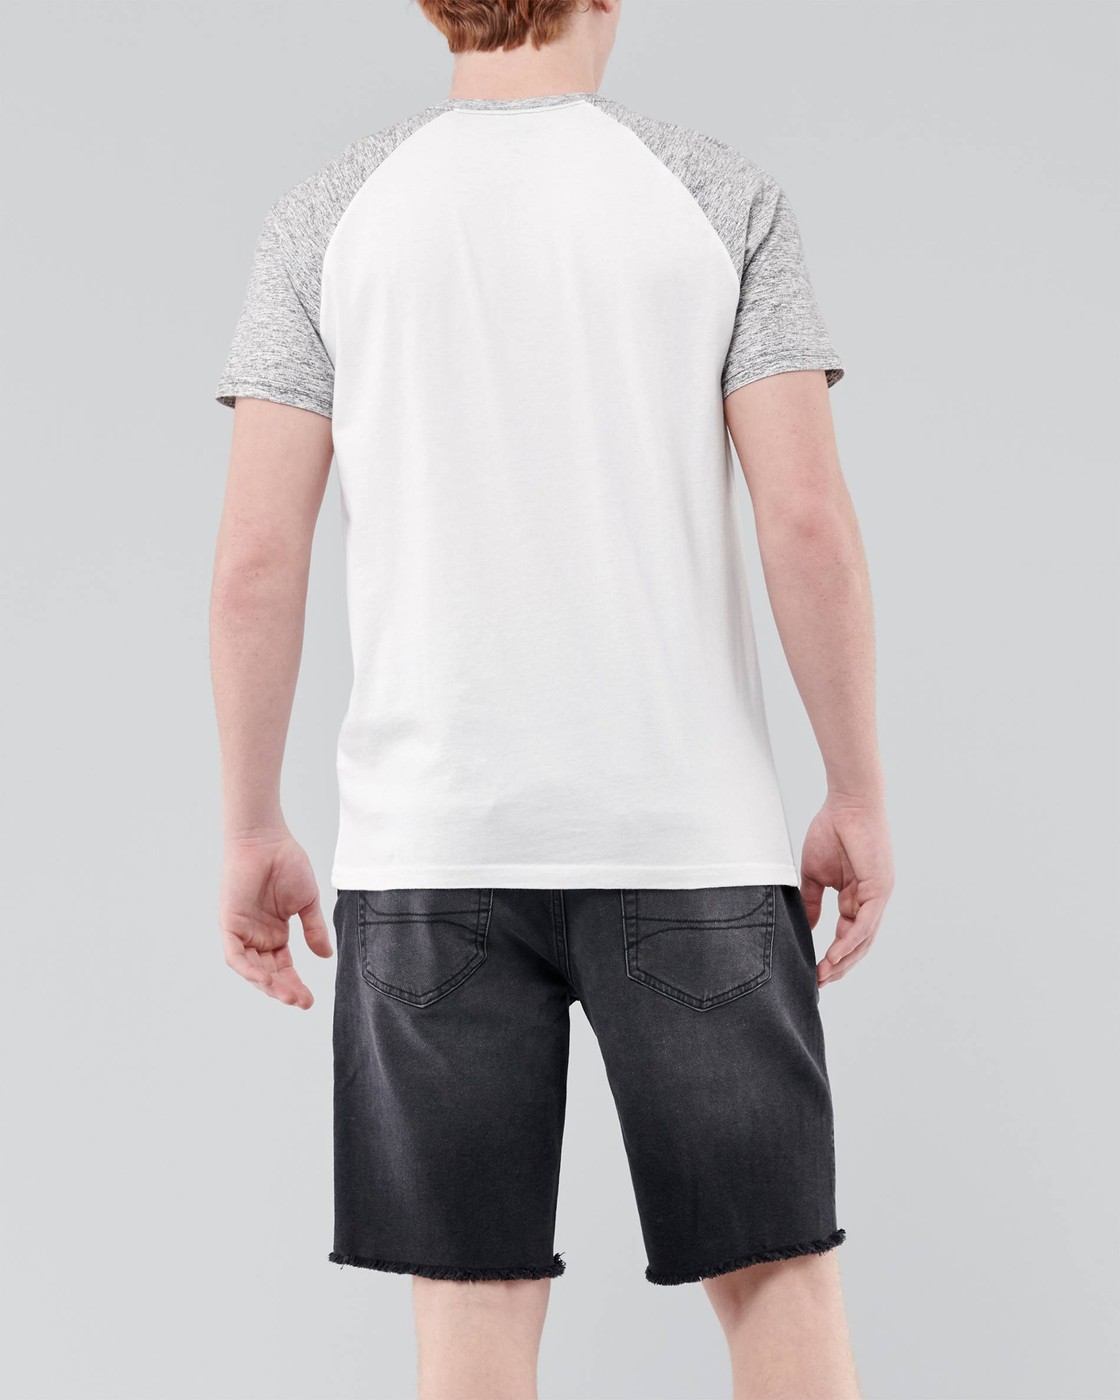 Белая футболка - мужская футболка Hollister